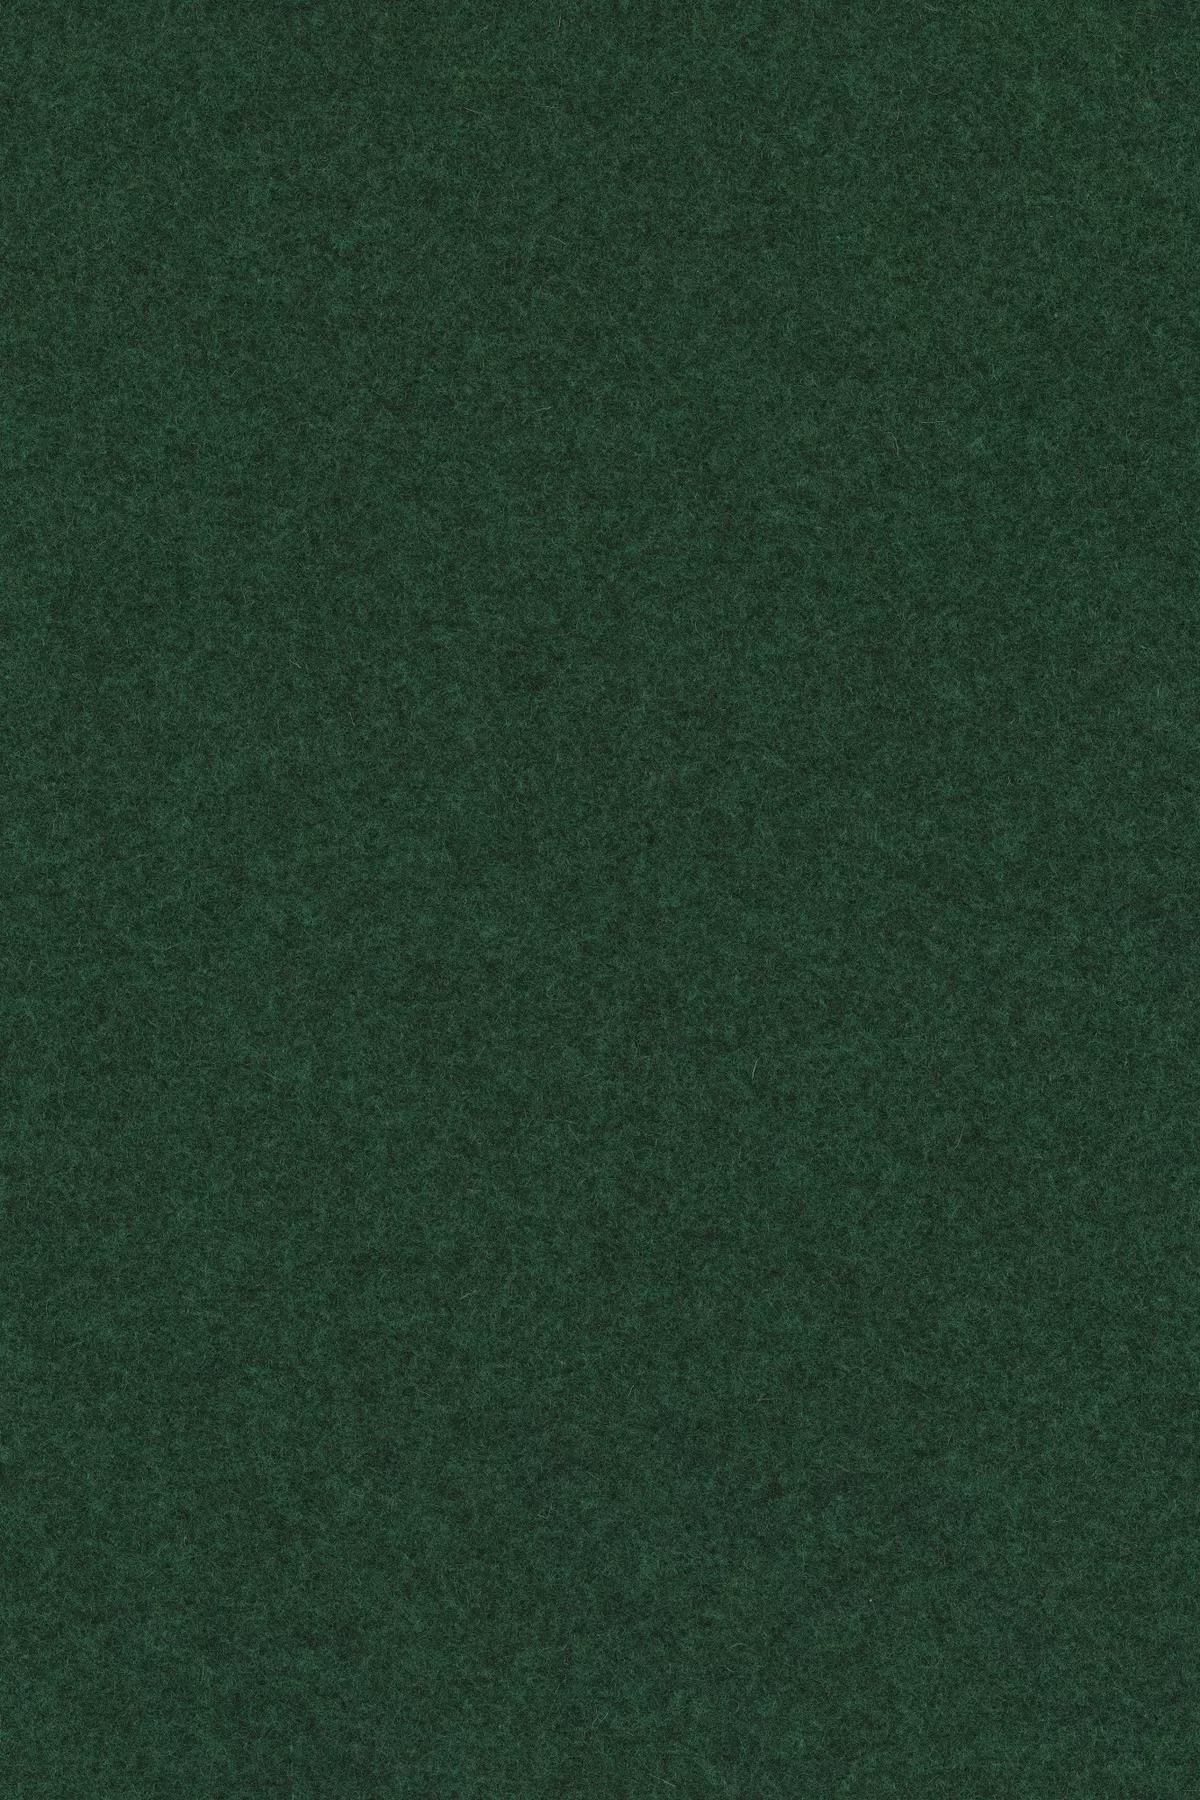 Fabric sample Divina Melange 3 967 green